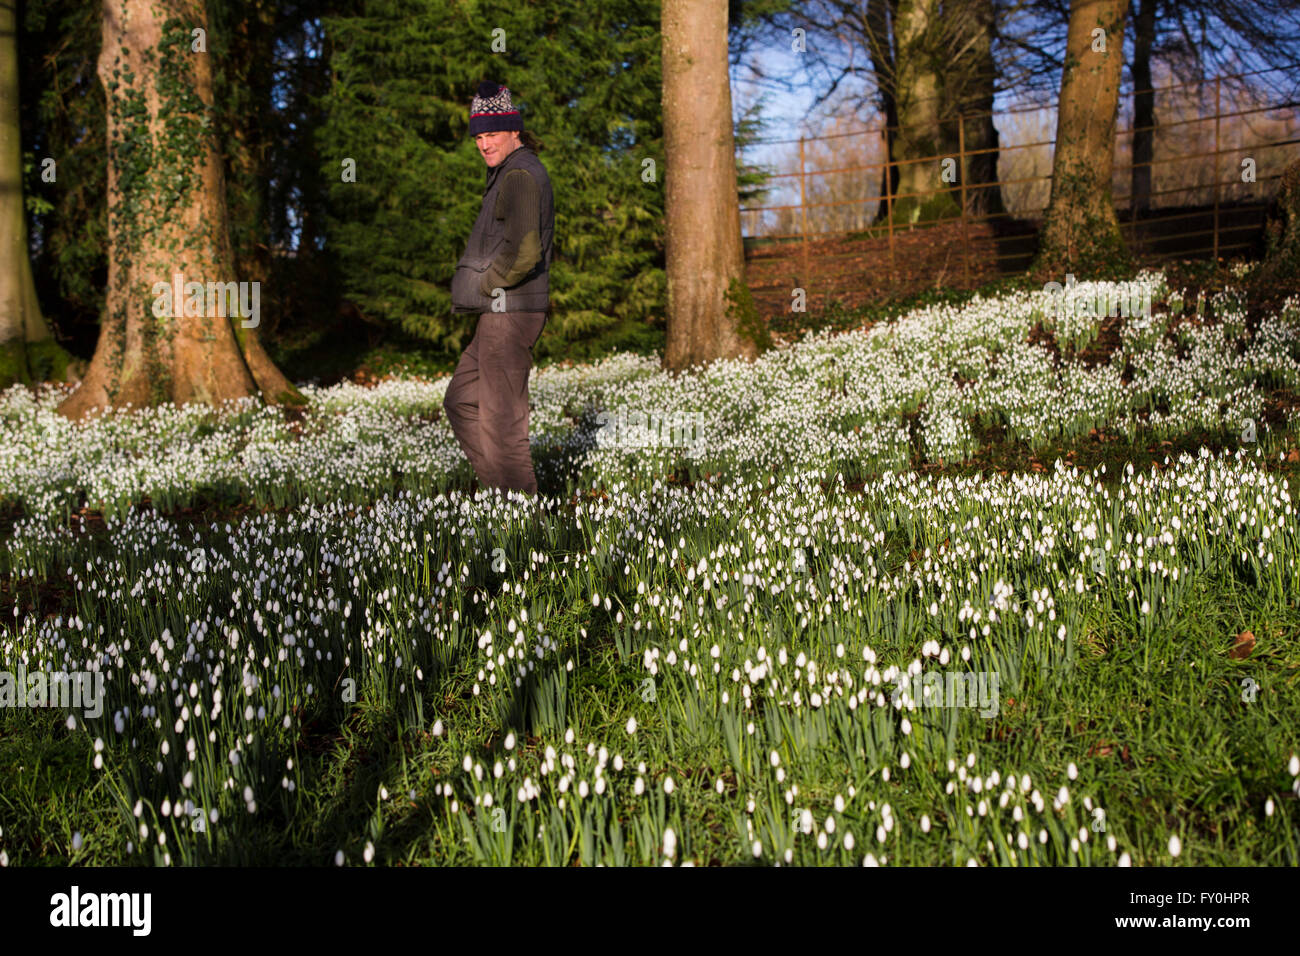 Colesbourne Park Schneeglöckchen Sammlung, in der Nähe von Cheltenham, Vereinigtes Königreich öffnet seine Türen für die Öffentlichkeit an diesem Wochenende 30. Januar. Der Park enthält über 250 seltene und ungewöhnliche Sorten von Schneeglöckchen und gilt als "Englands größte Schneeglöckchen Garten" (Leben). Kopf Gärtner Chris Horsefall fotografiert einige abschließende, bevor die Gärten dieses Wochenende öffnen. Stockfoto